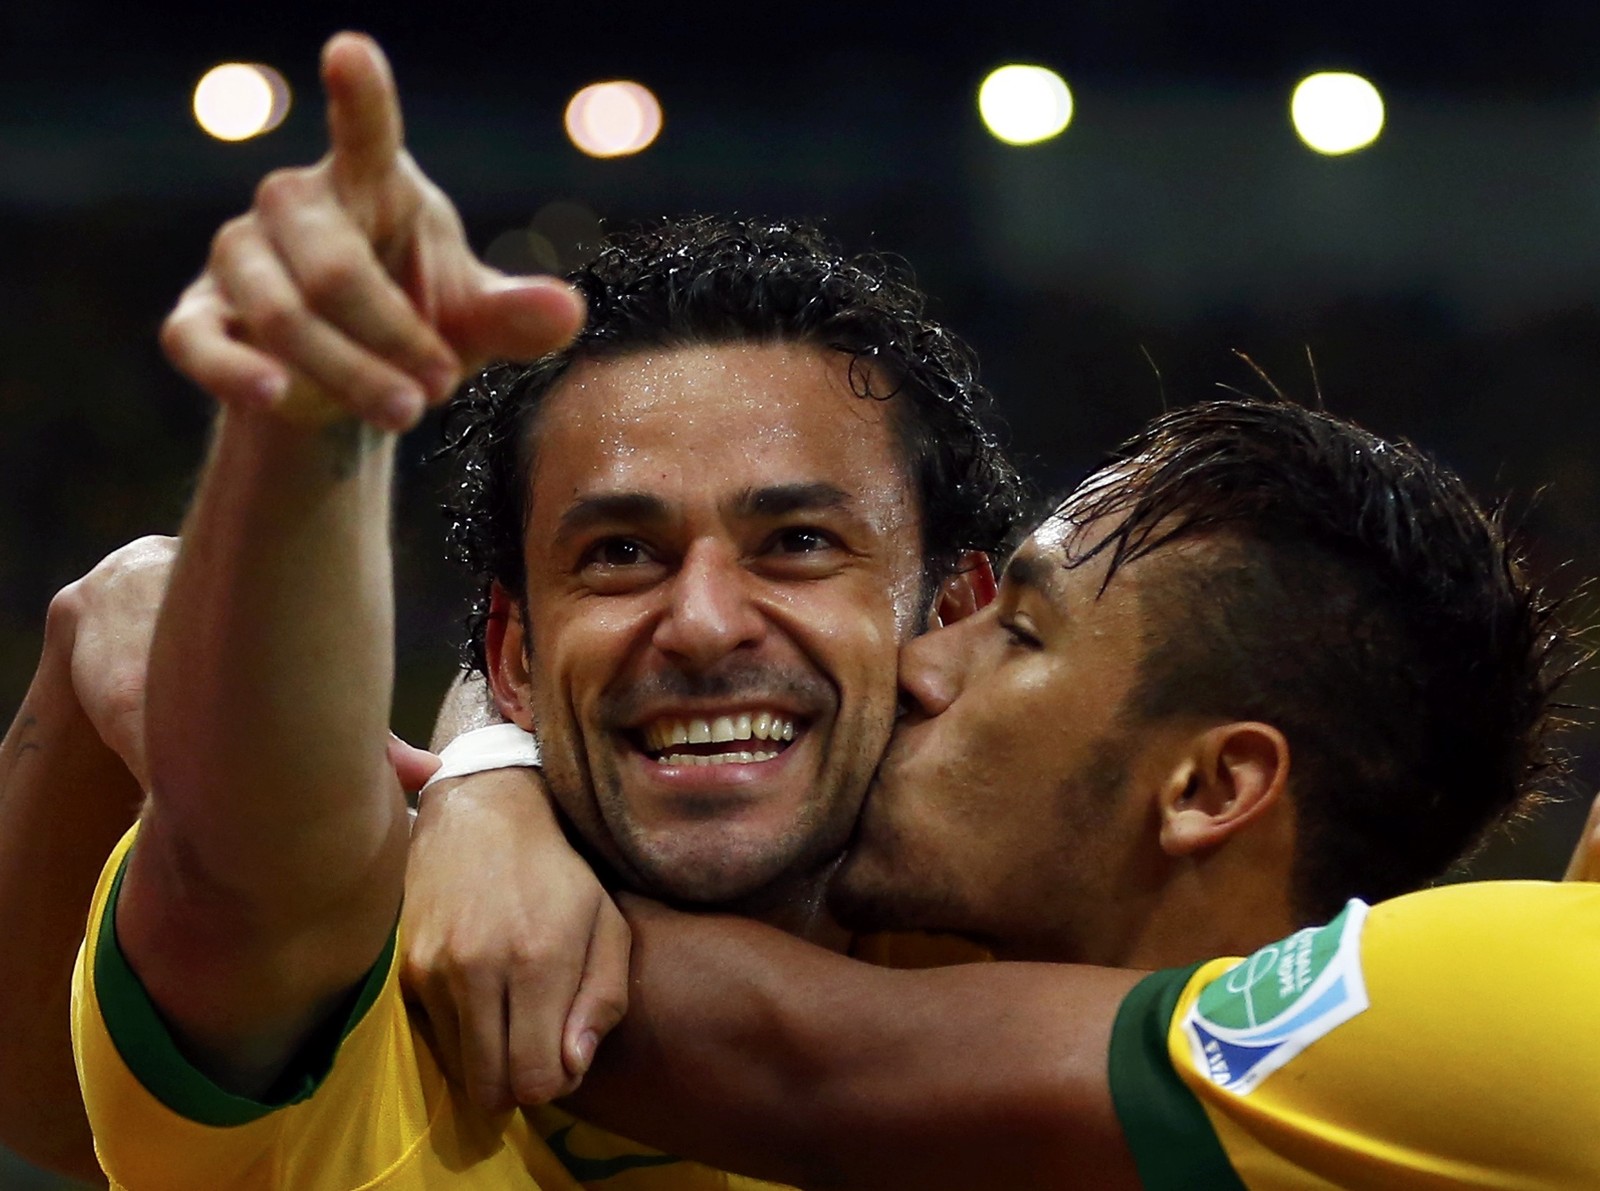 Fred cleebra com Neymar gol feito pela seleção, contra a Espanha no Maracanã — Foto: Jorge Silva / AFP